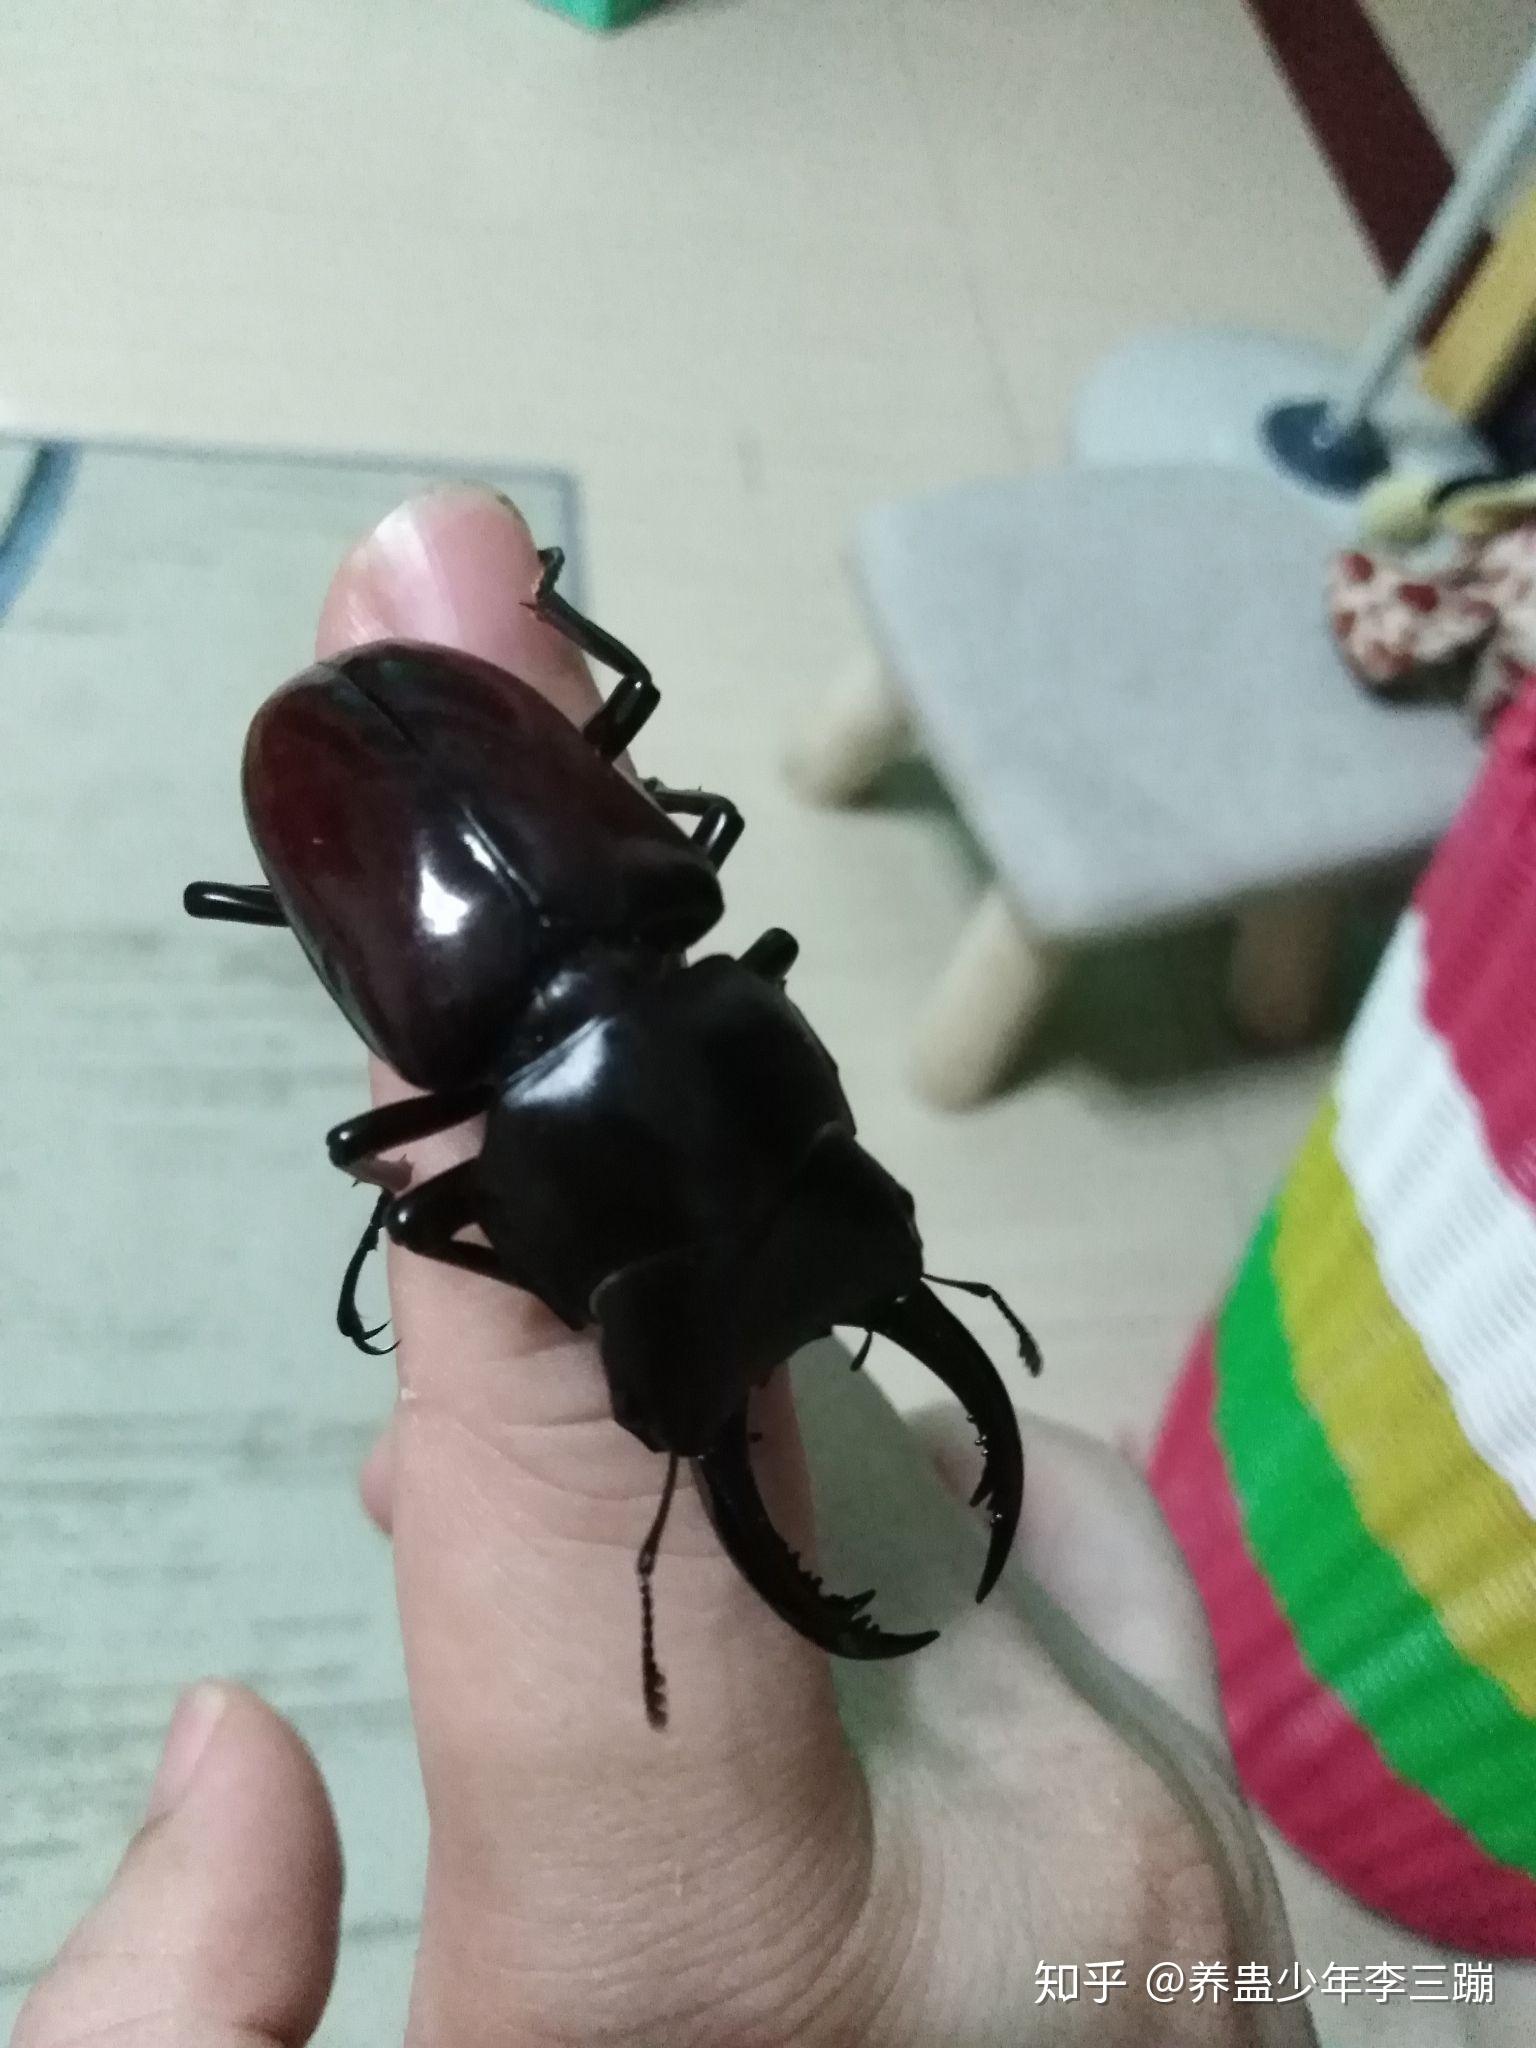 这种黑甲虫叫什么? 